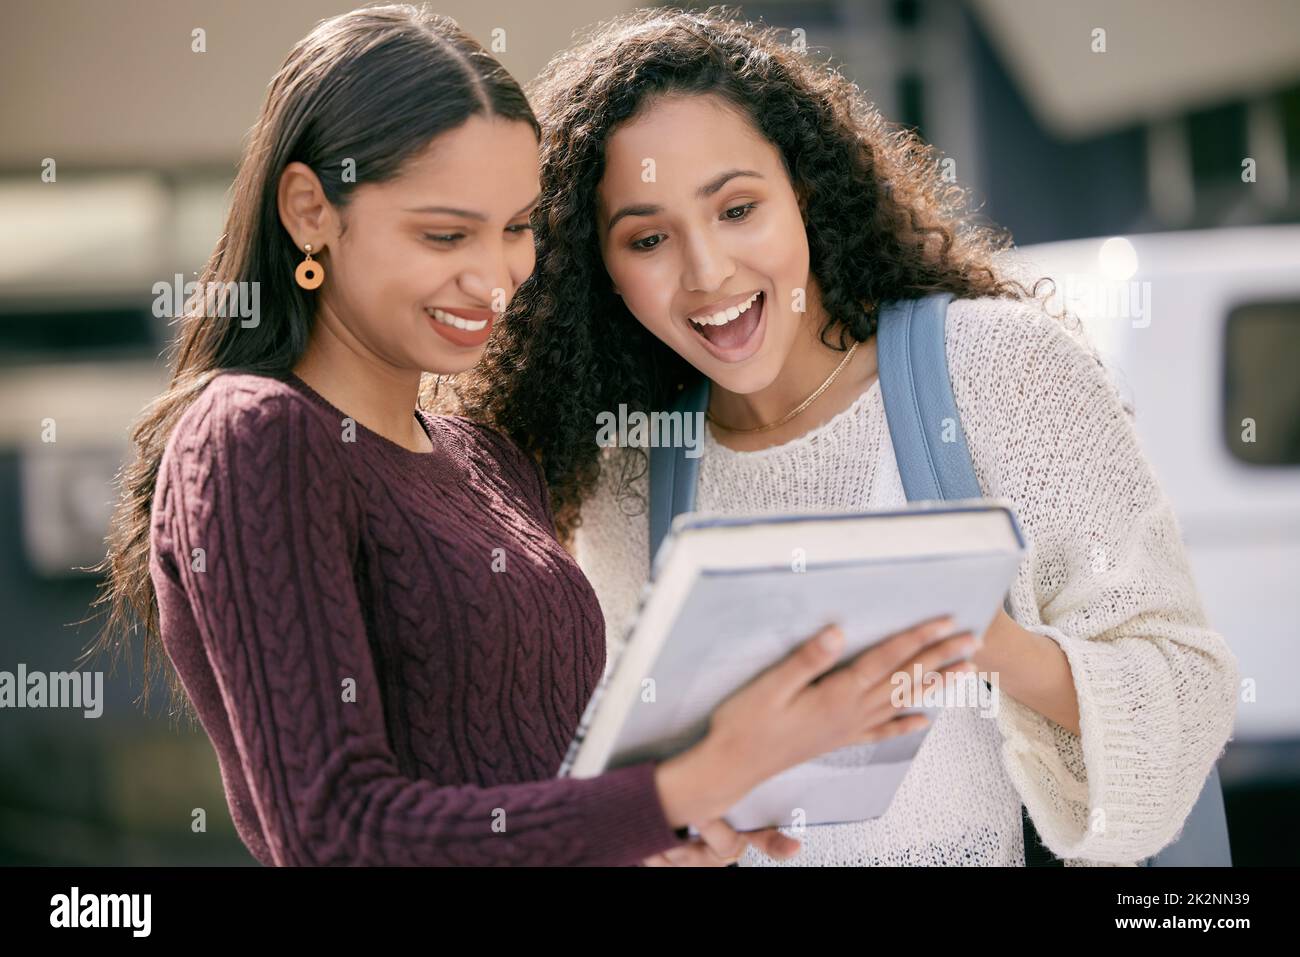 Du hast einen 100 Pass. Aufnahme von zwei jungen Frauen, die zusammen an der Hochschule studieren. Stockfoto